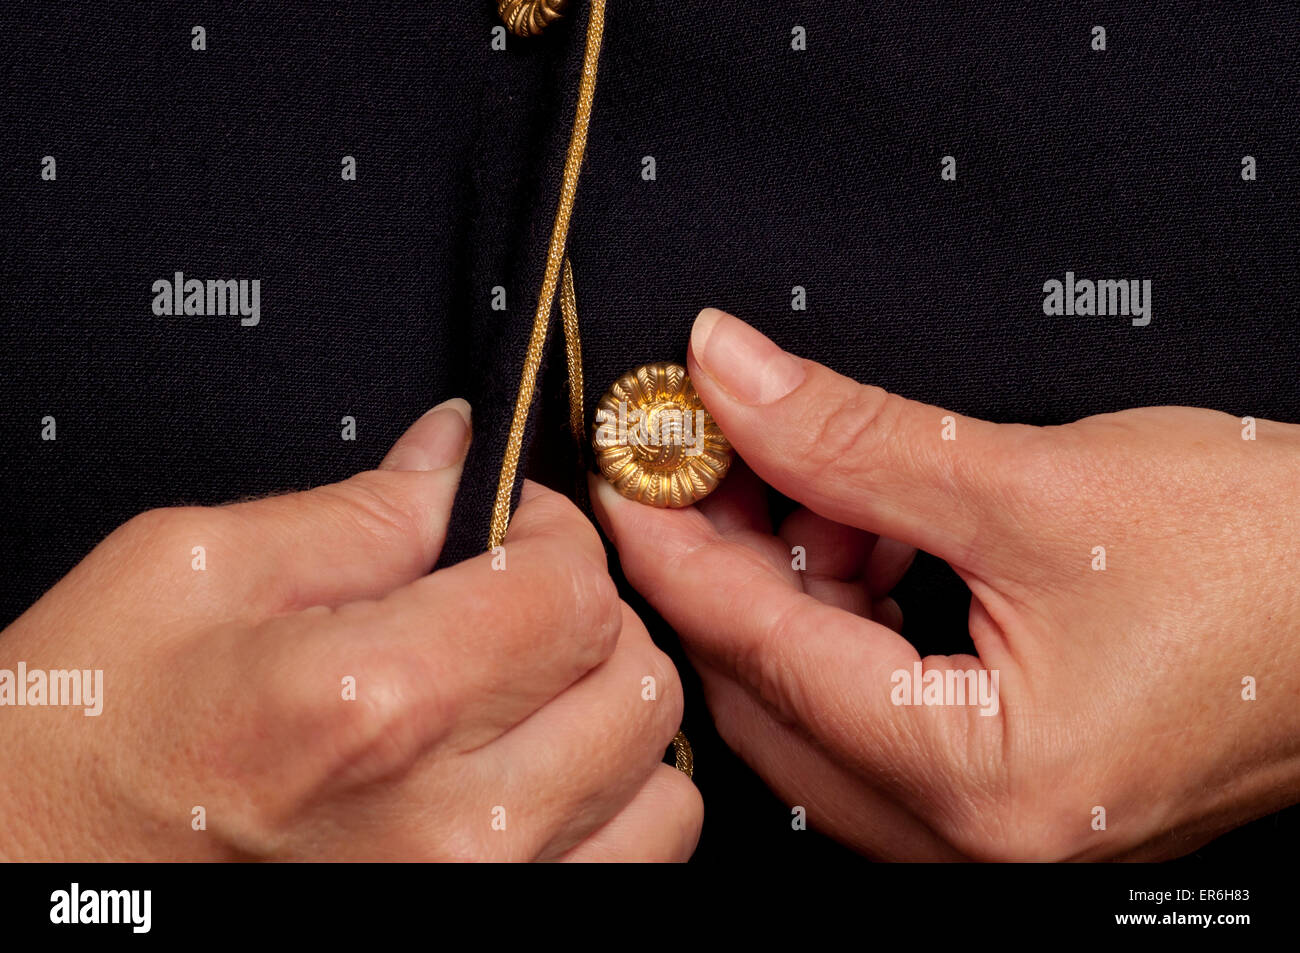 Mujer con artritis tratando de botón a botón con dolorosas manos. Foto de stock